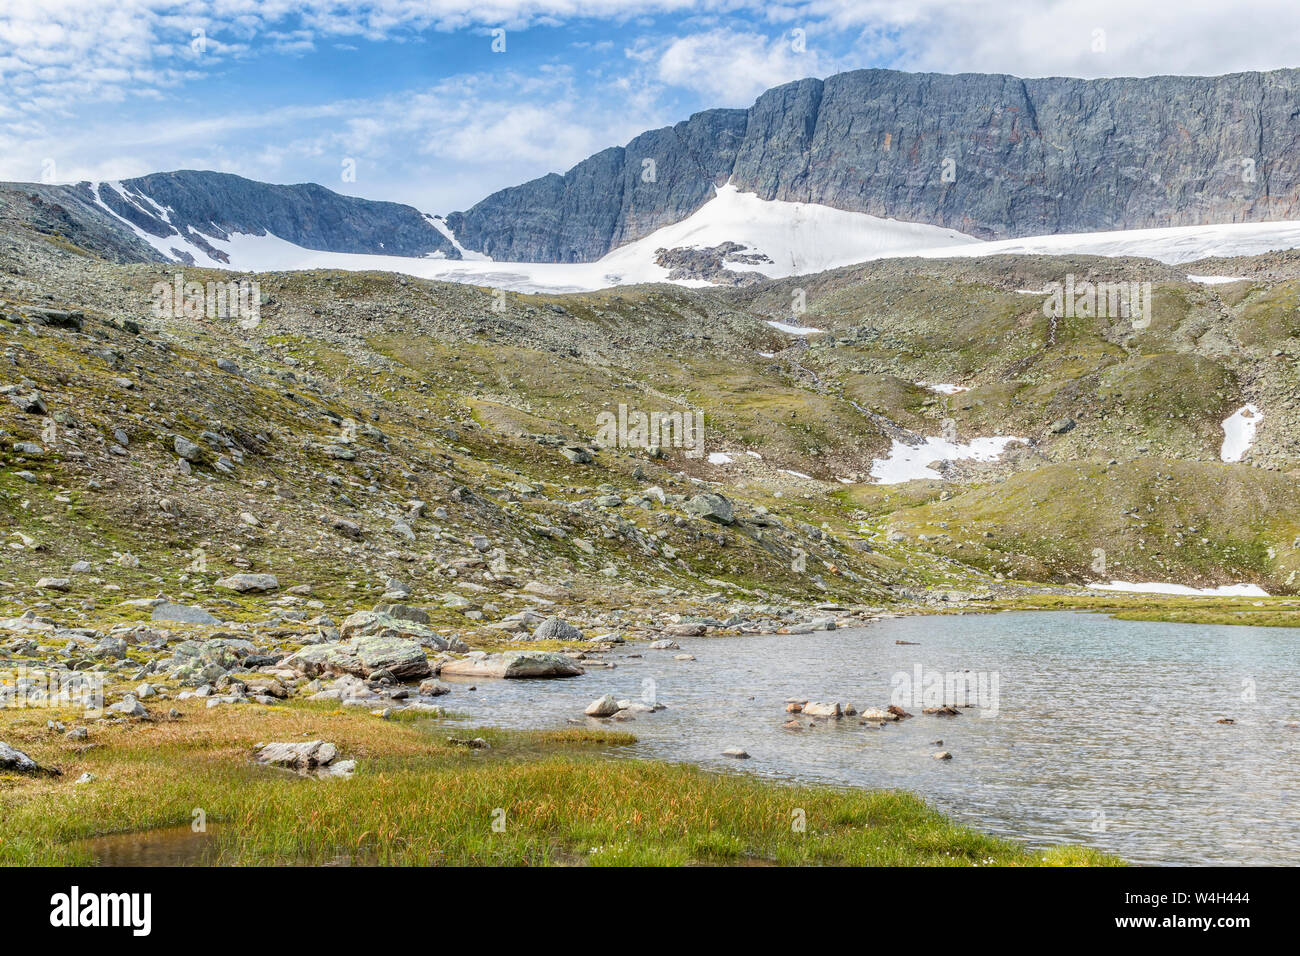 Scenics mountain landscape in the north Stock Photo